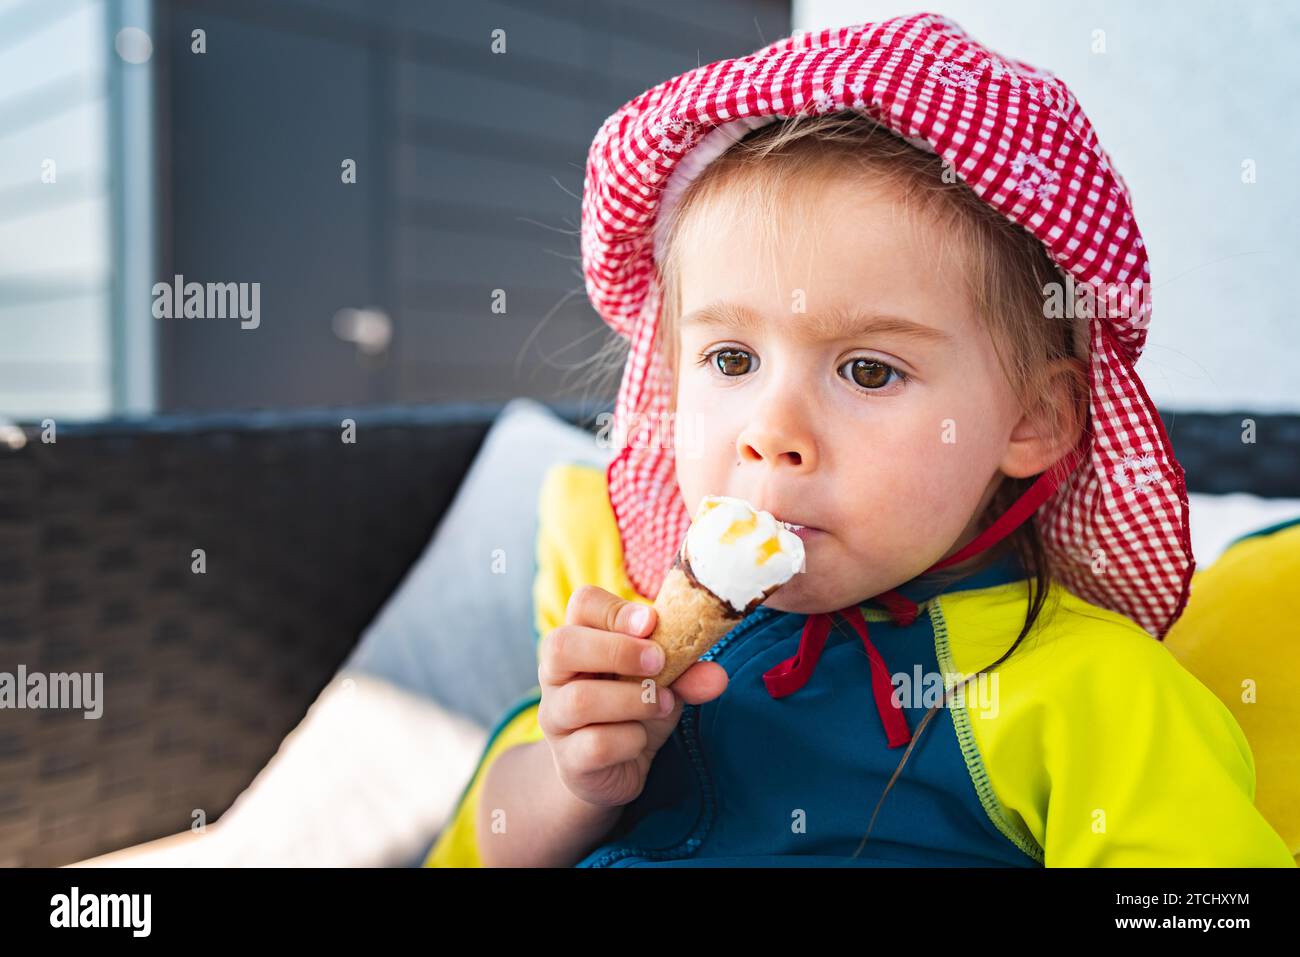 Ritrarre il bambino con gli occhi grandi che lecca il gelato in estate. bambina di 2 anni. I bambini mangiano dolci Foto Stock